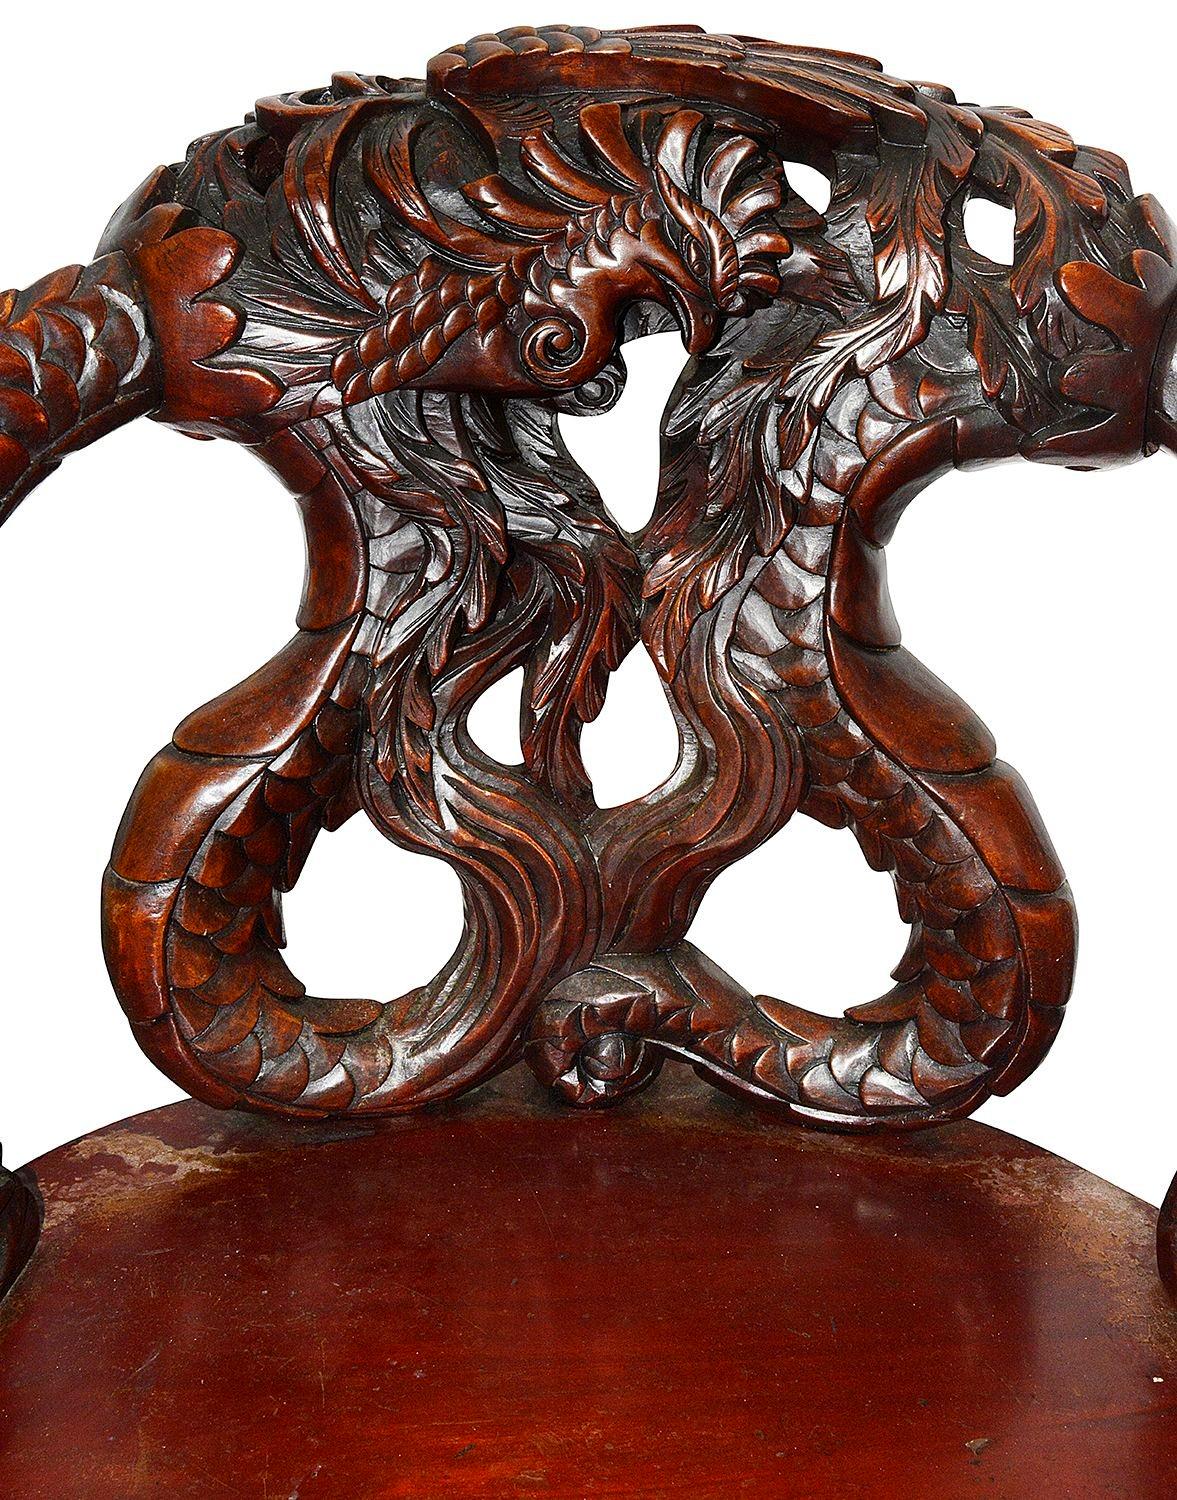 Un fauteuil en bois sculpté japonais de très bonne qualité de la fin du XIXe siècle, avec une paire de merveilleux dragons mythiques sur le dossier et les accoudoirs. L'assise est en forme de serpentin et repose sur des pieds cabriole ailés.


Lot 75